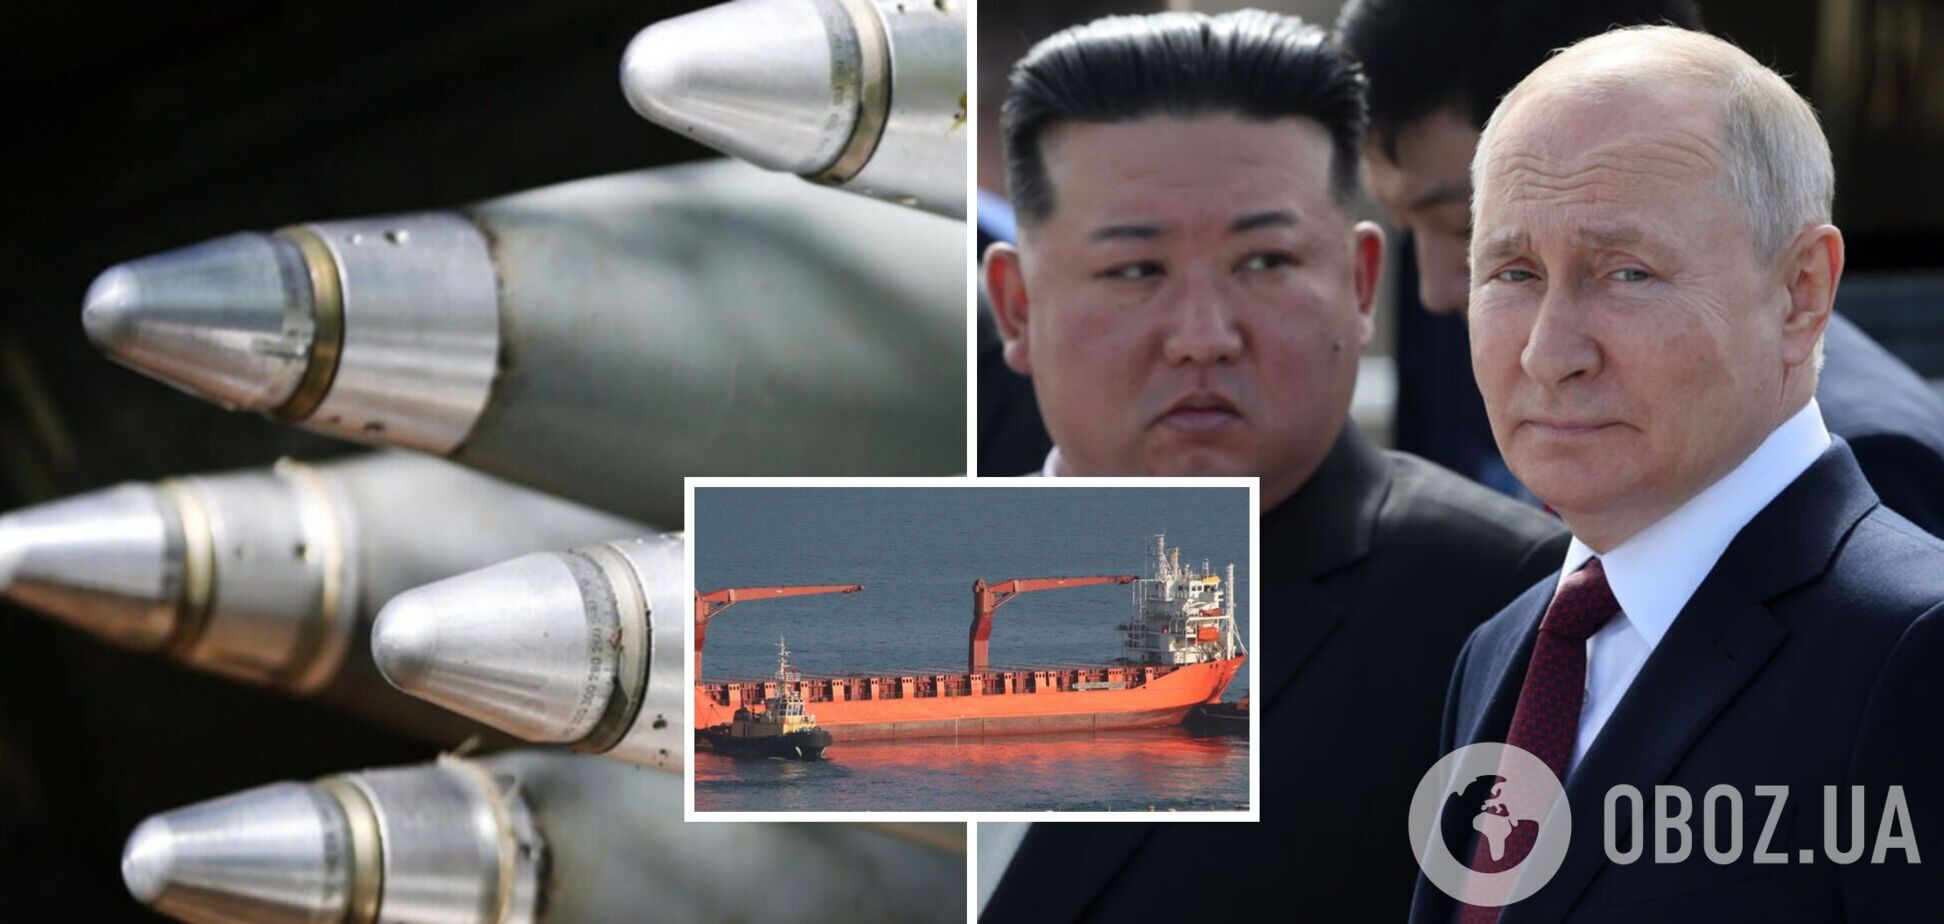 КНДР приостановила поставки боеприпасов России по морю: что происходит